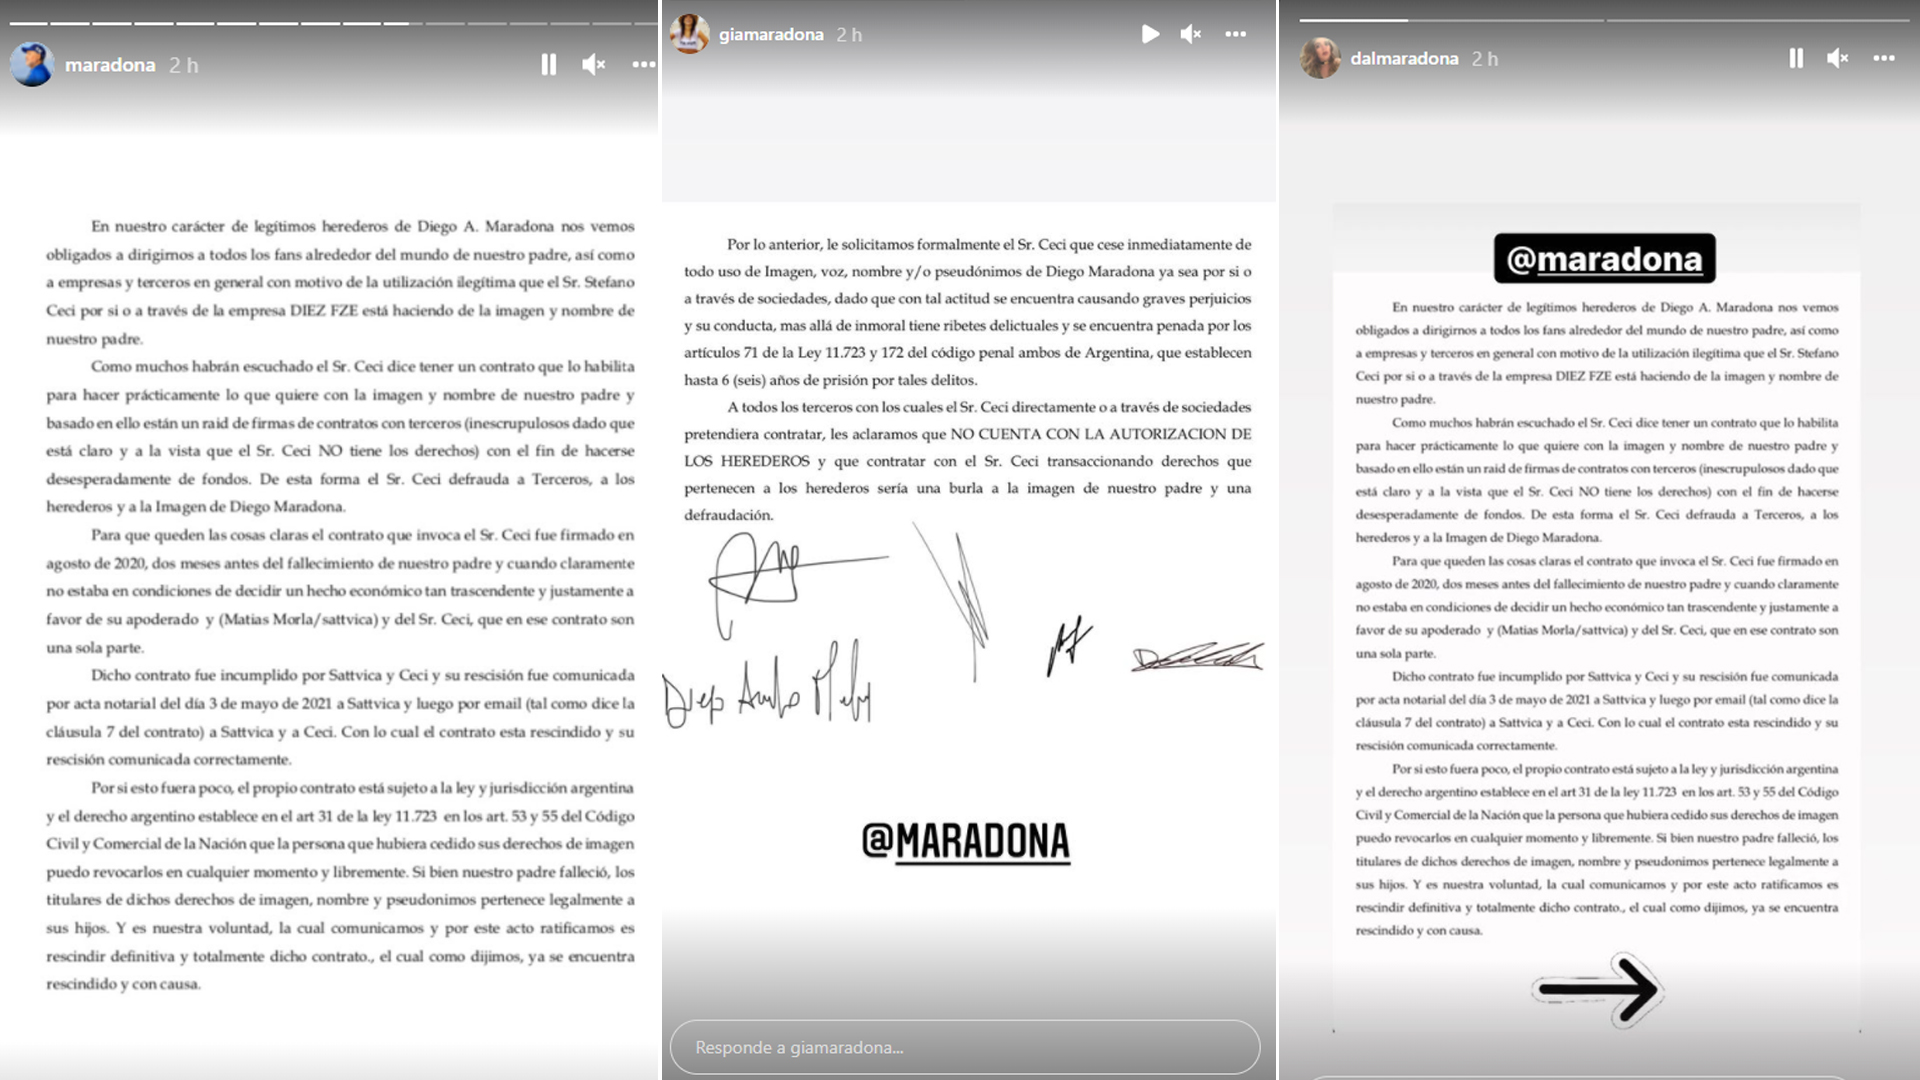 Nuova dichiarazione dei cinque figli di Maradona contro Stéfano Ceci